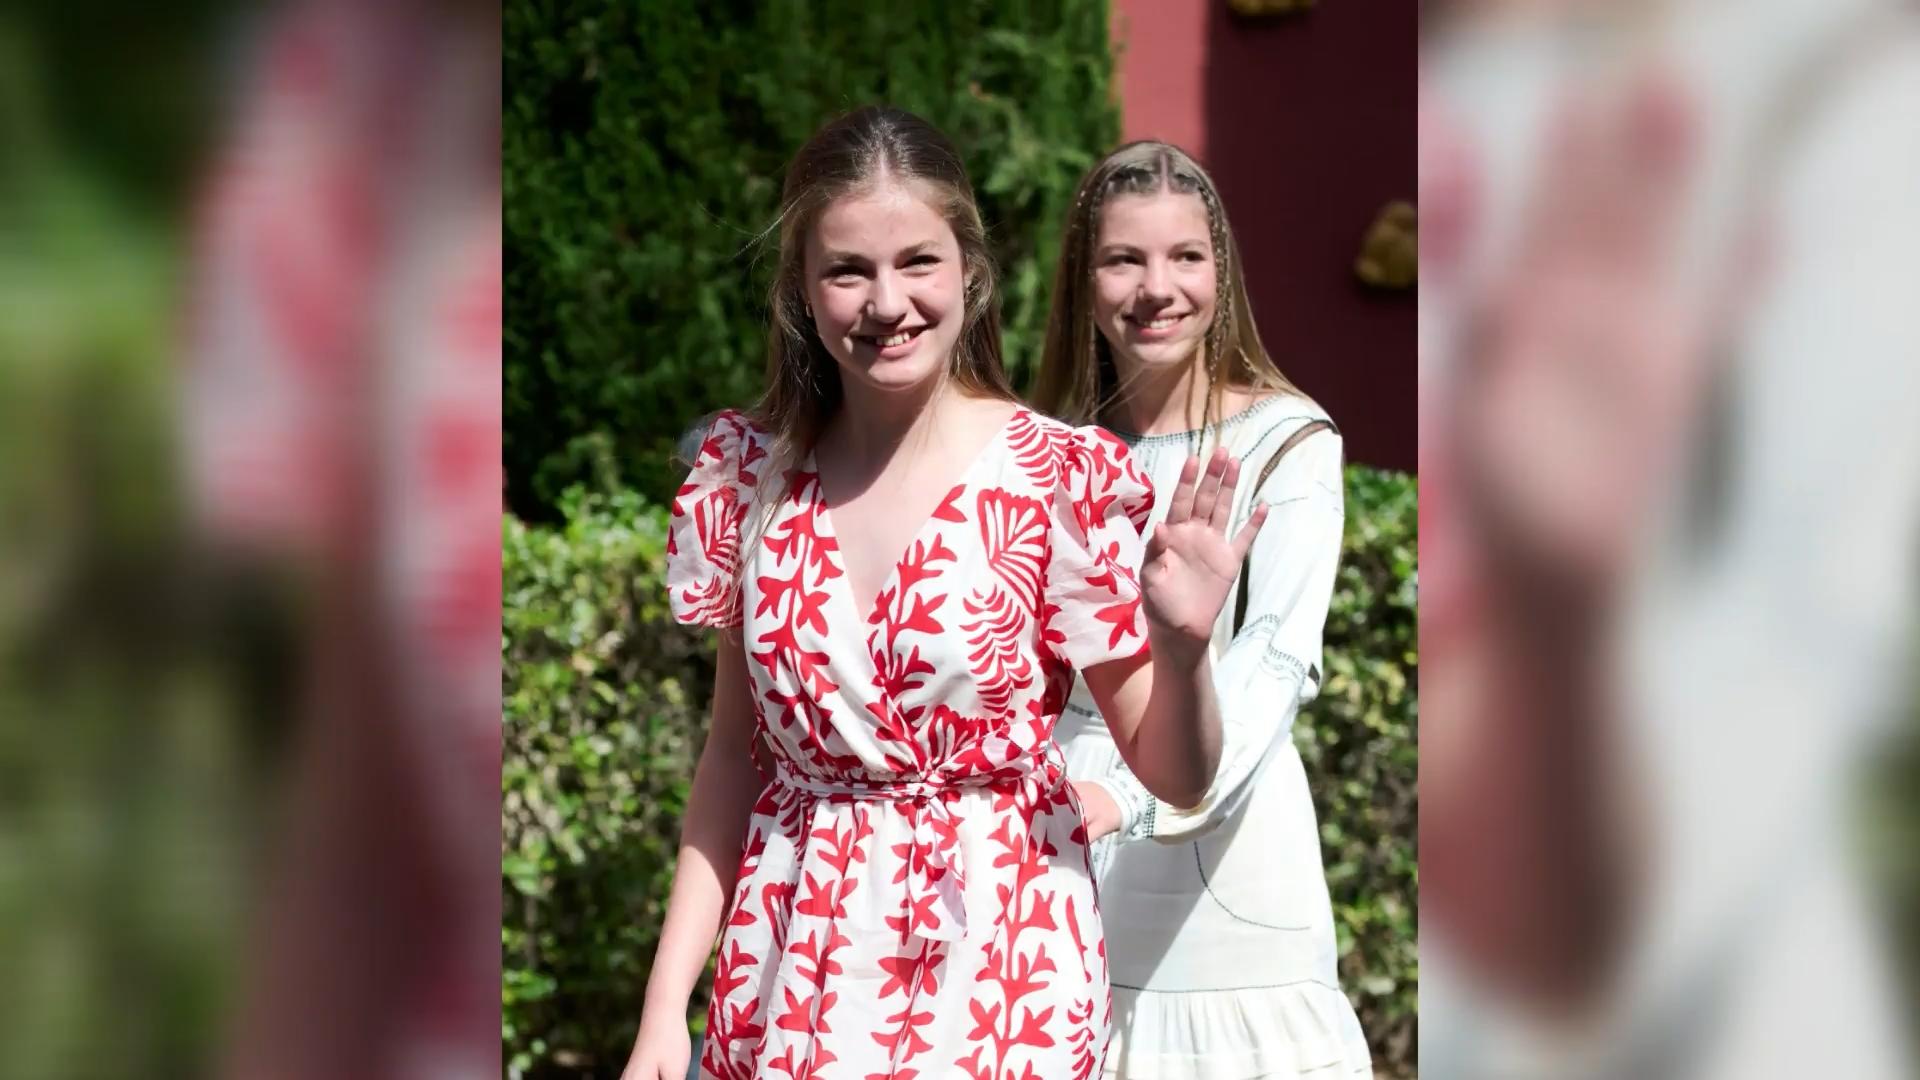 Junge Spanien-Prinzessinen bei Event ausgebuht Sommerliches Solo mit Folgen